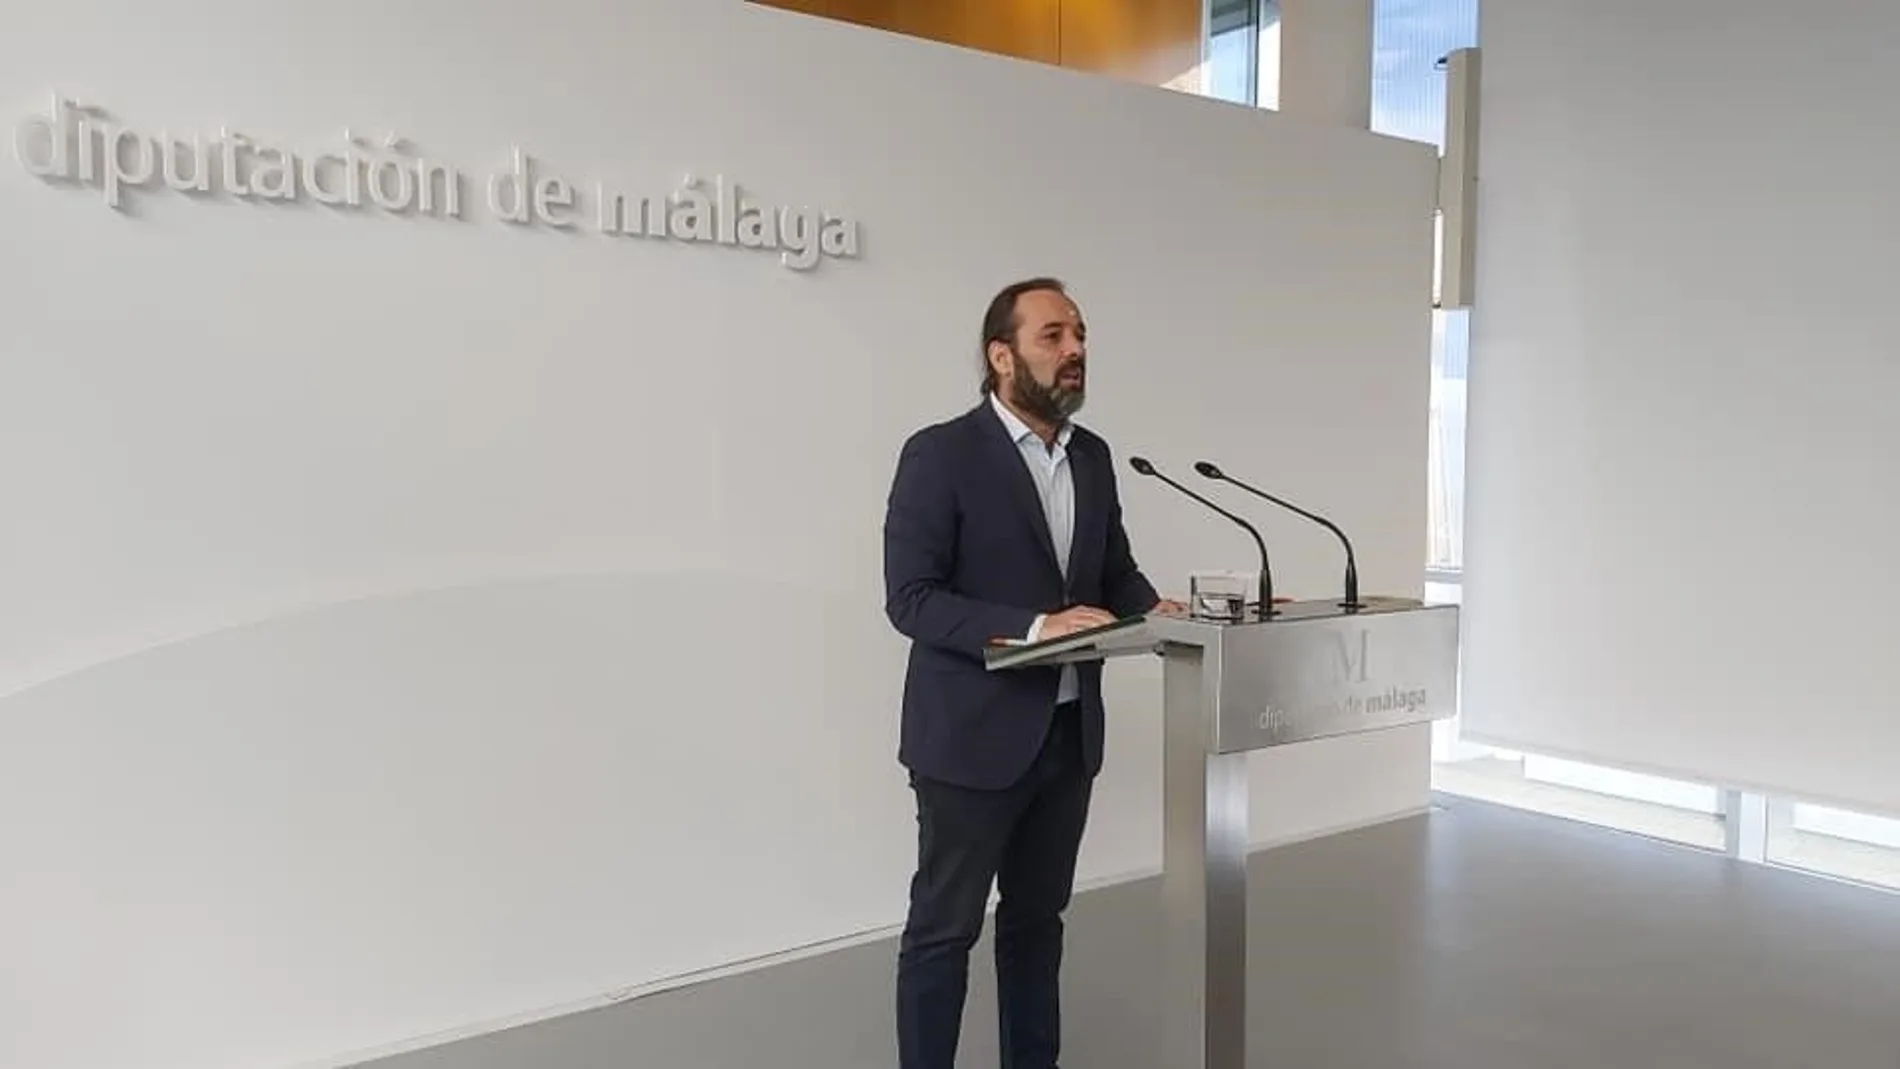 El portavoz del equipo de gobierno de la Diputación de Málaga, Juan Cassá